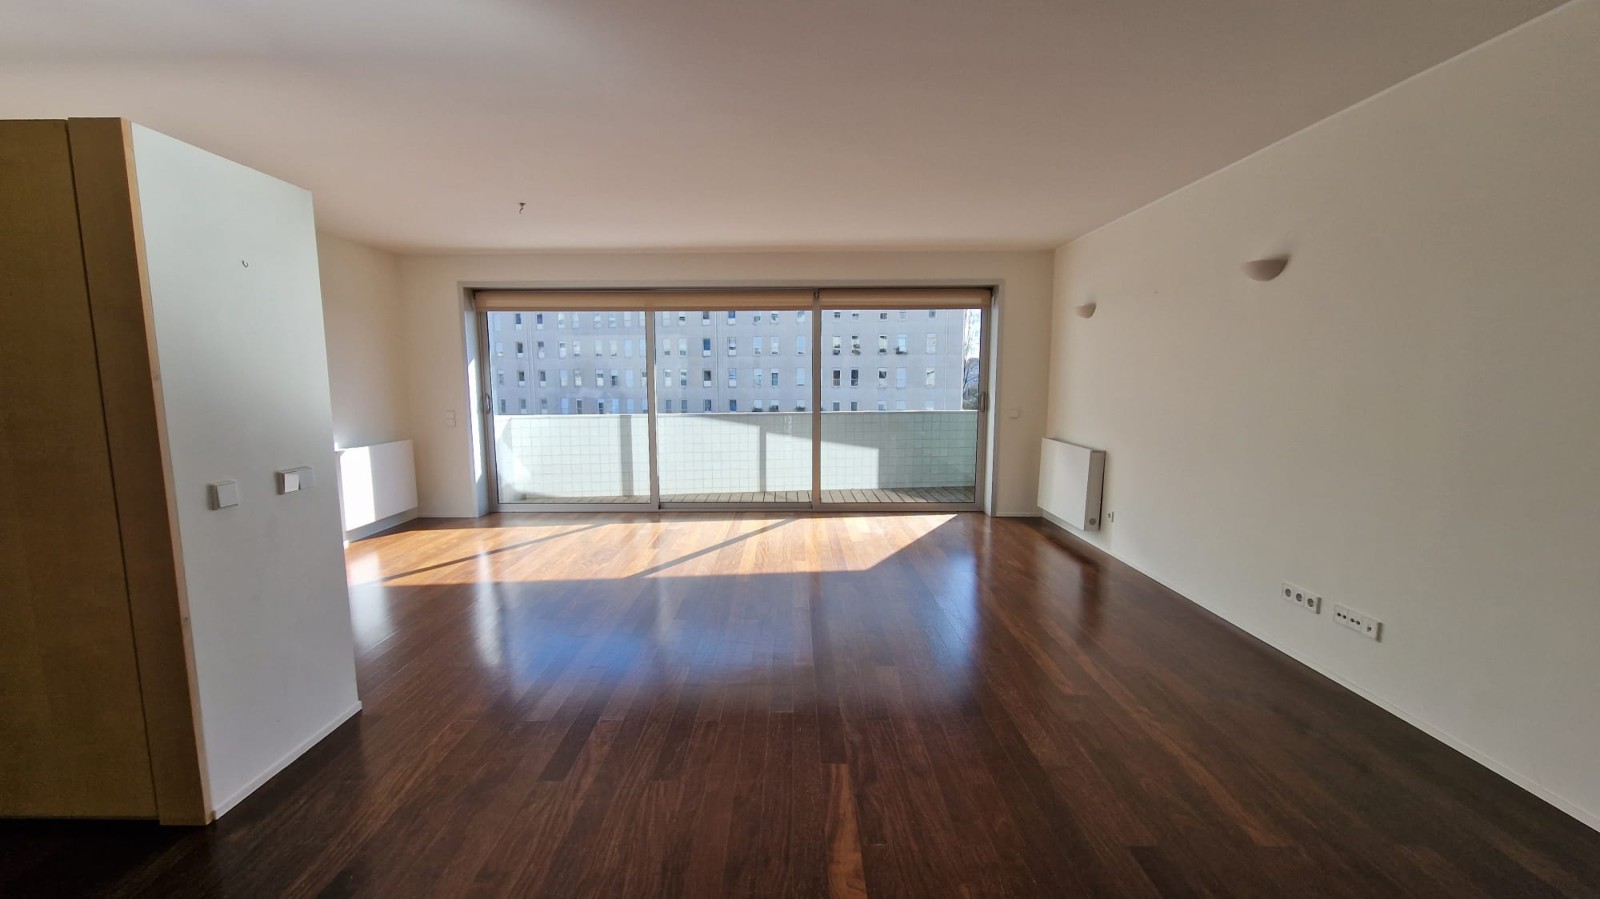 Apartamento duplex com varanda, para venda, em Lordelo do Ouro_219124